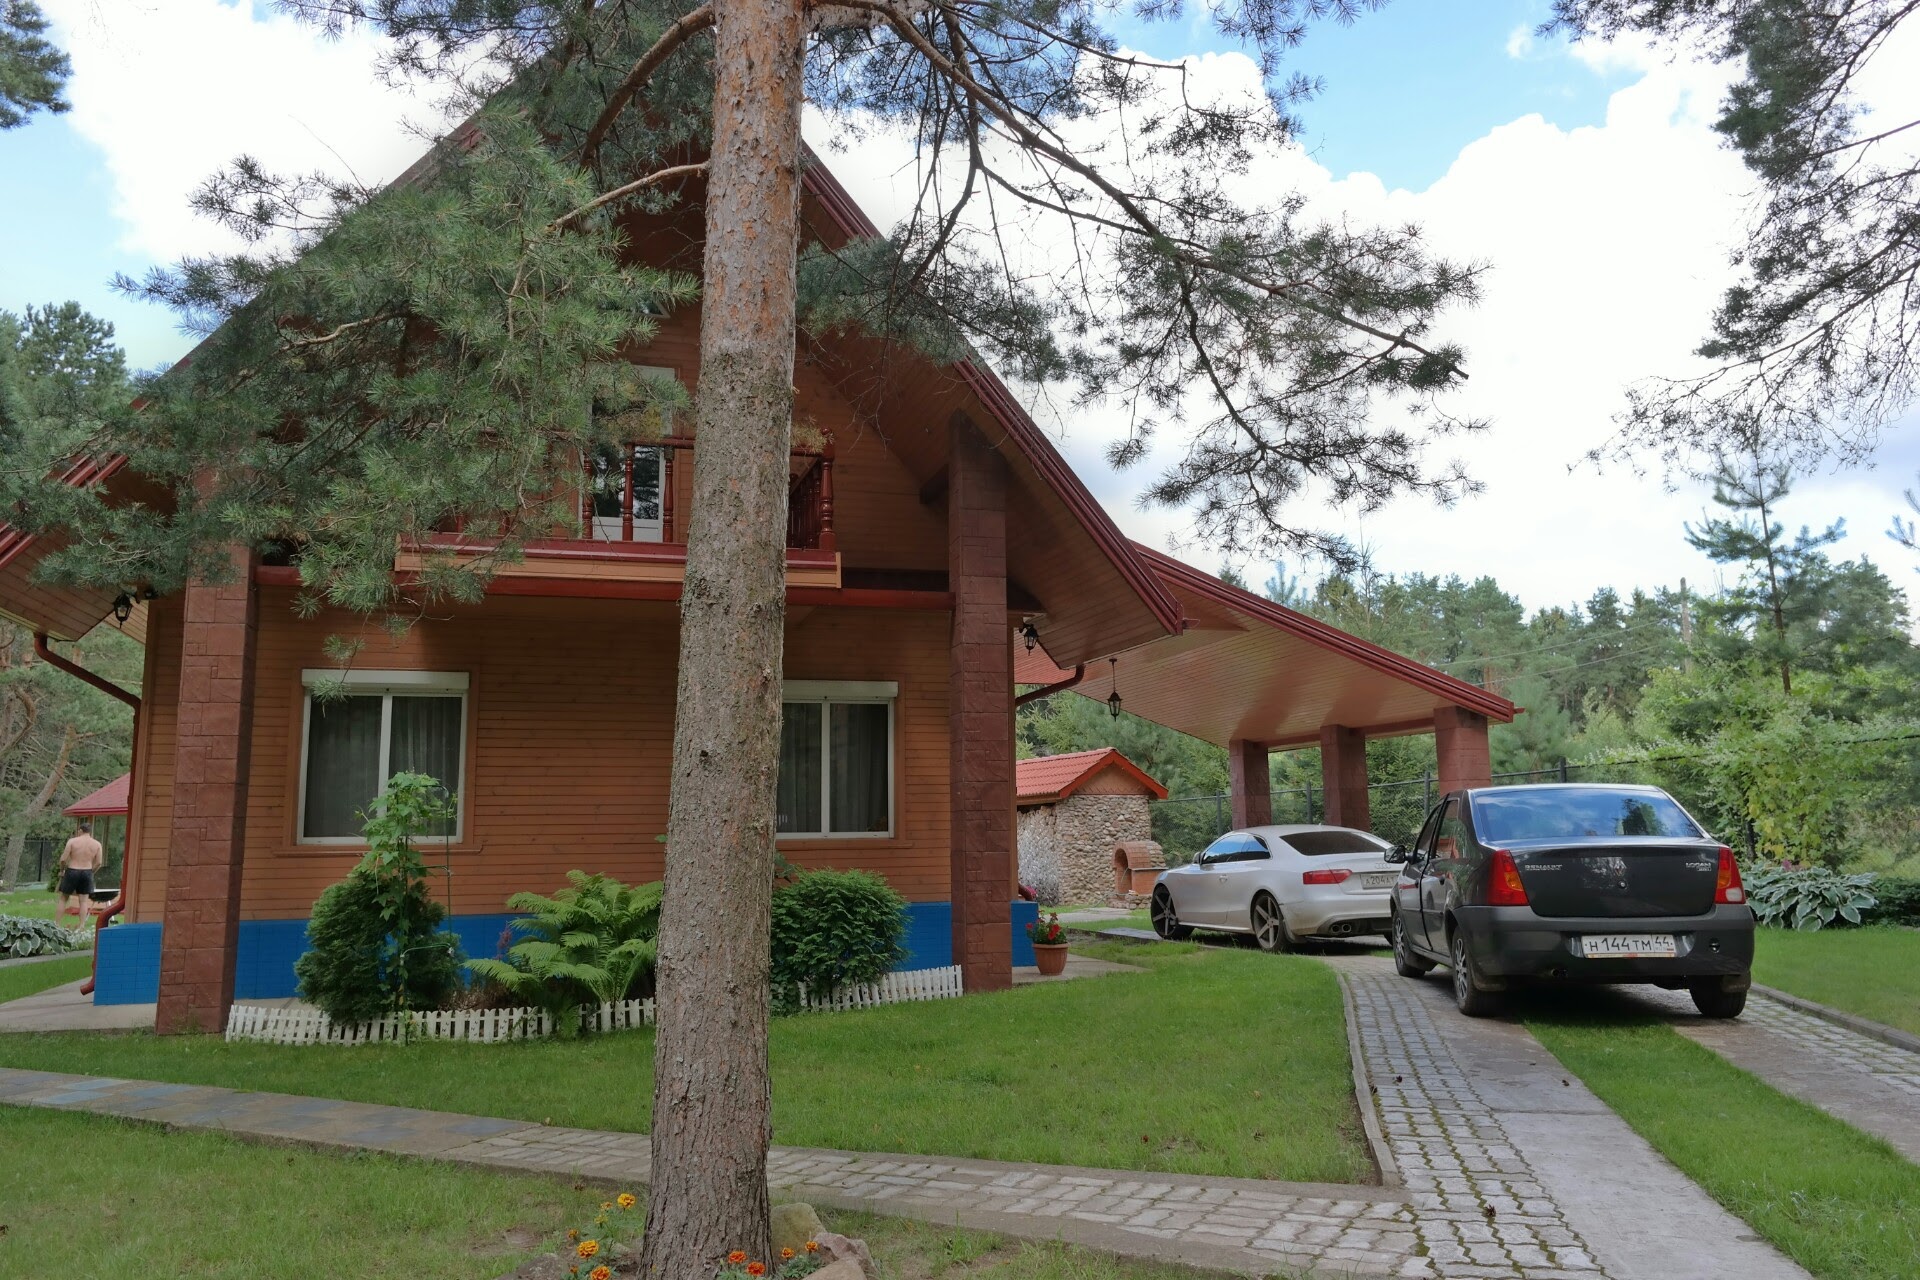 Аренда на выходные, для отпуска, отметить праздник предлагается дом в г. Юрьевец (Ивановская область). Стоимость указана за сутки проживания.